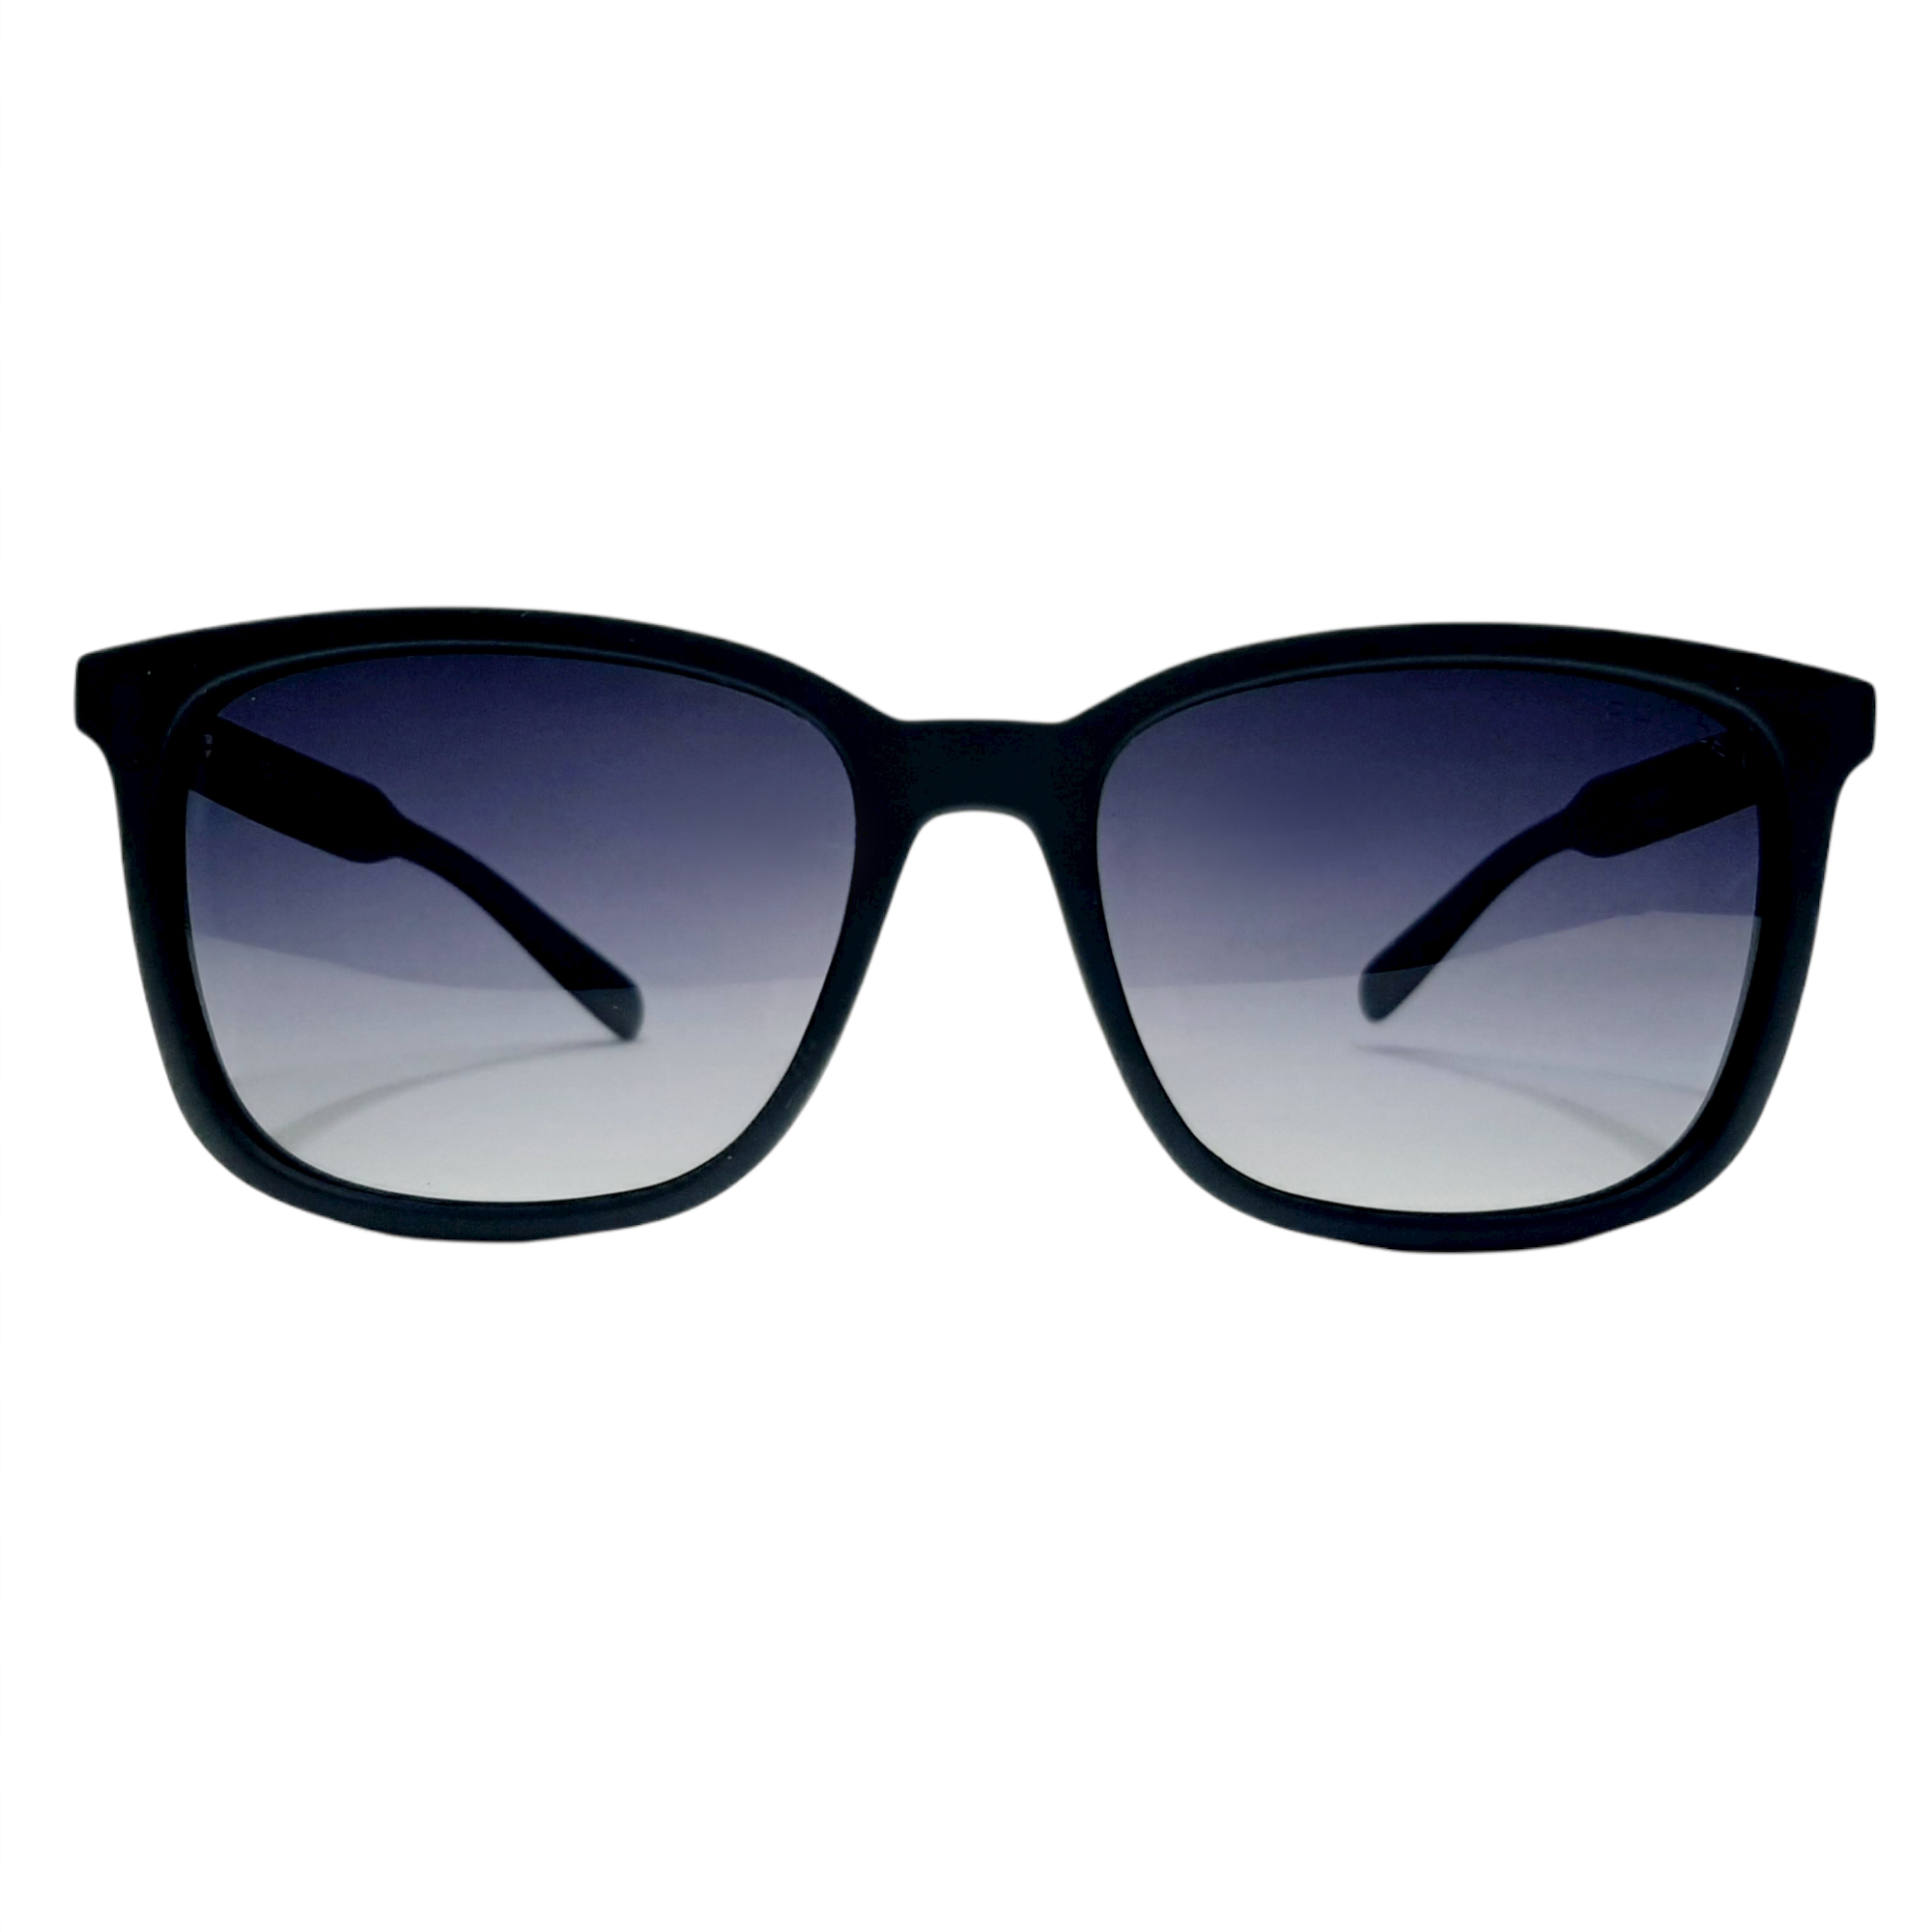 عینک آفتابی پلیس مدل PO8202c4 -  - 1